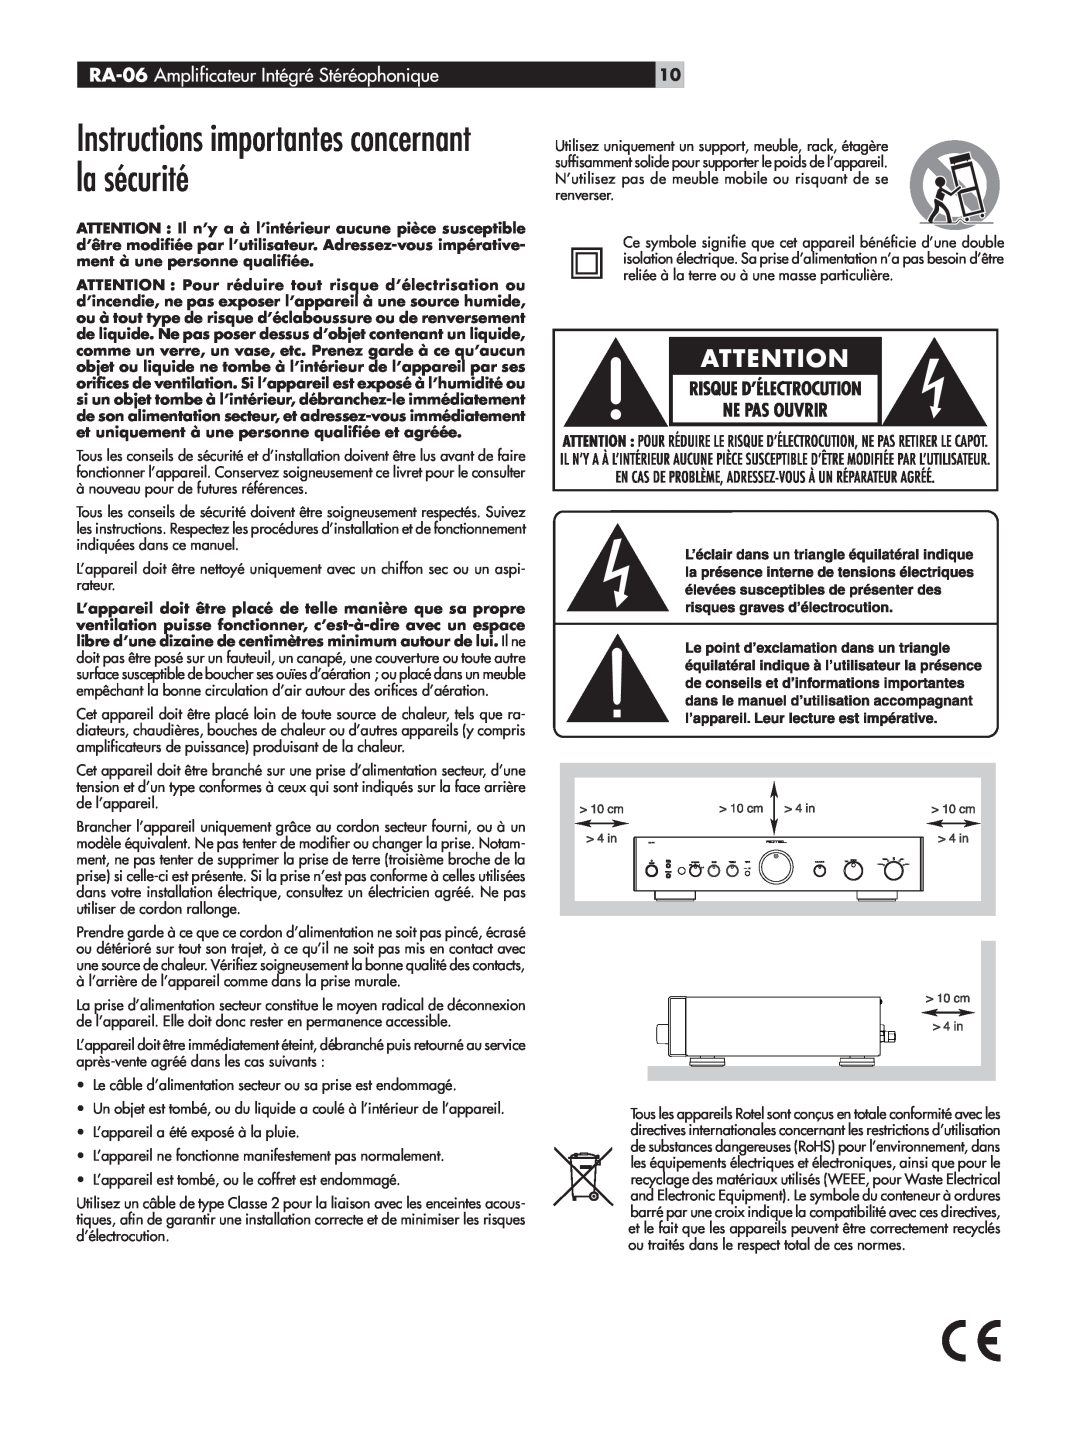 Rotel owner manual Instructions importantes concernant la sécurité, RA-06 Amplificateur Intégré Stéréophonique 